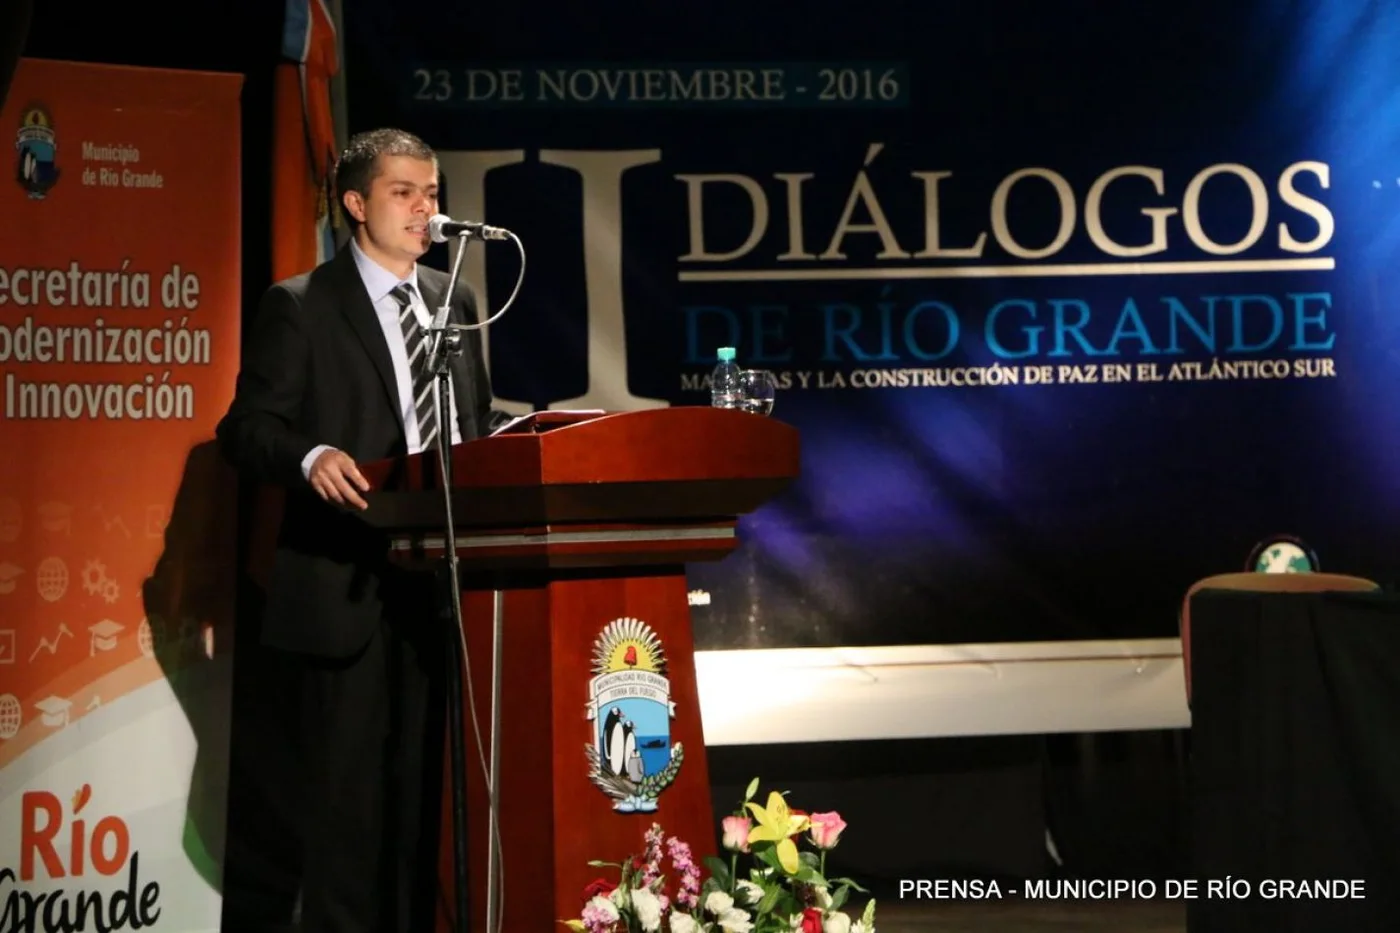 Cuarta Edición de los Diálogos de Río Grande